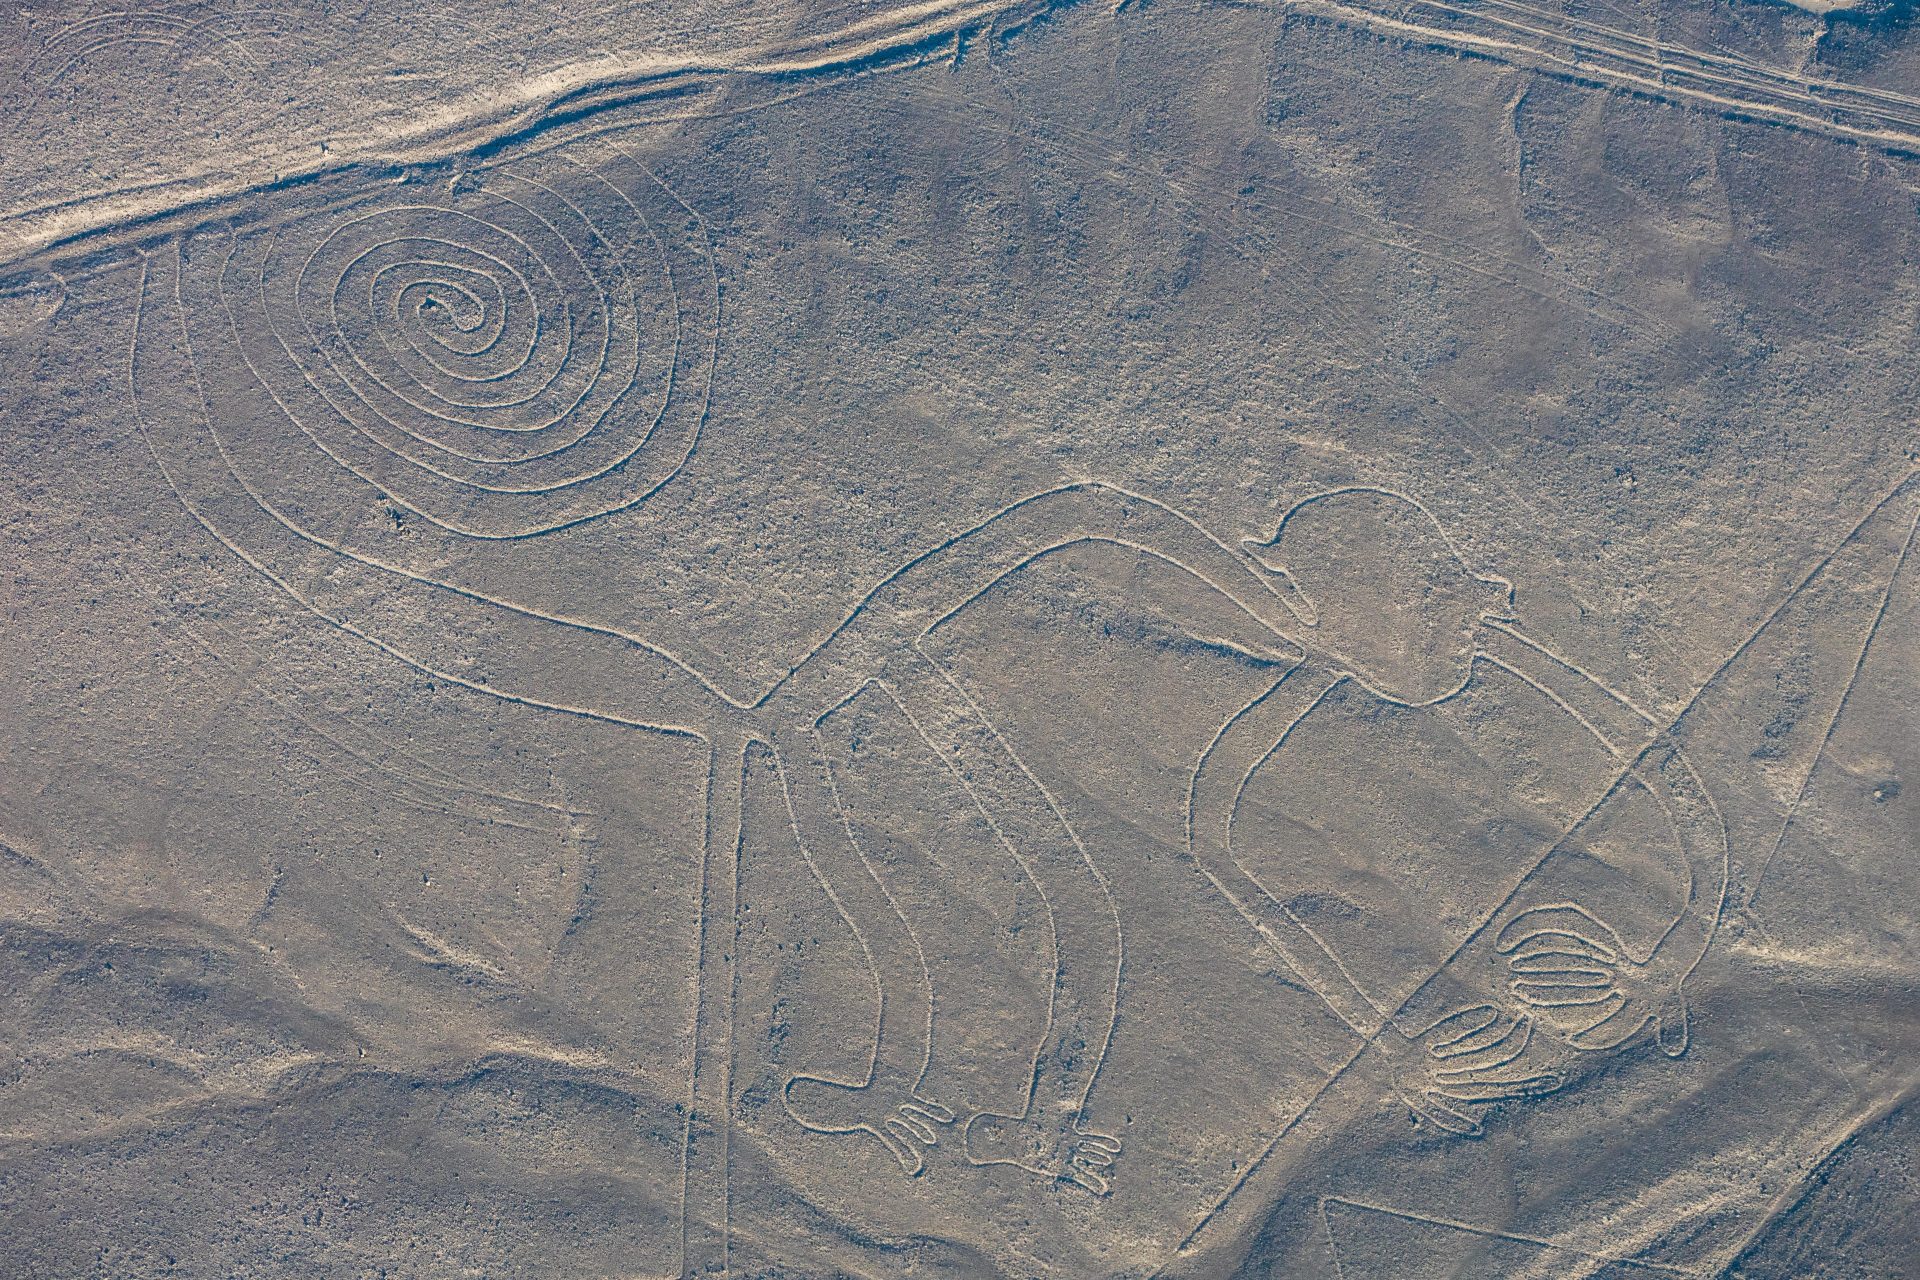 8. The Nazca Lines in Peru 